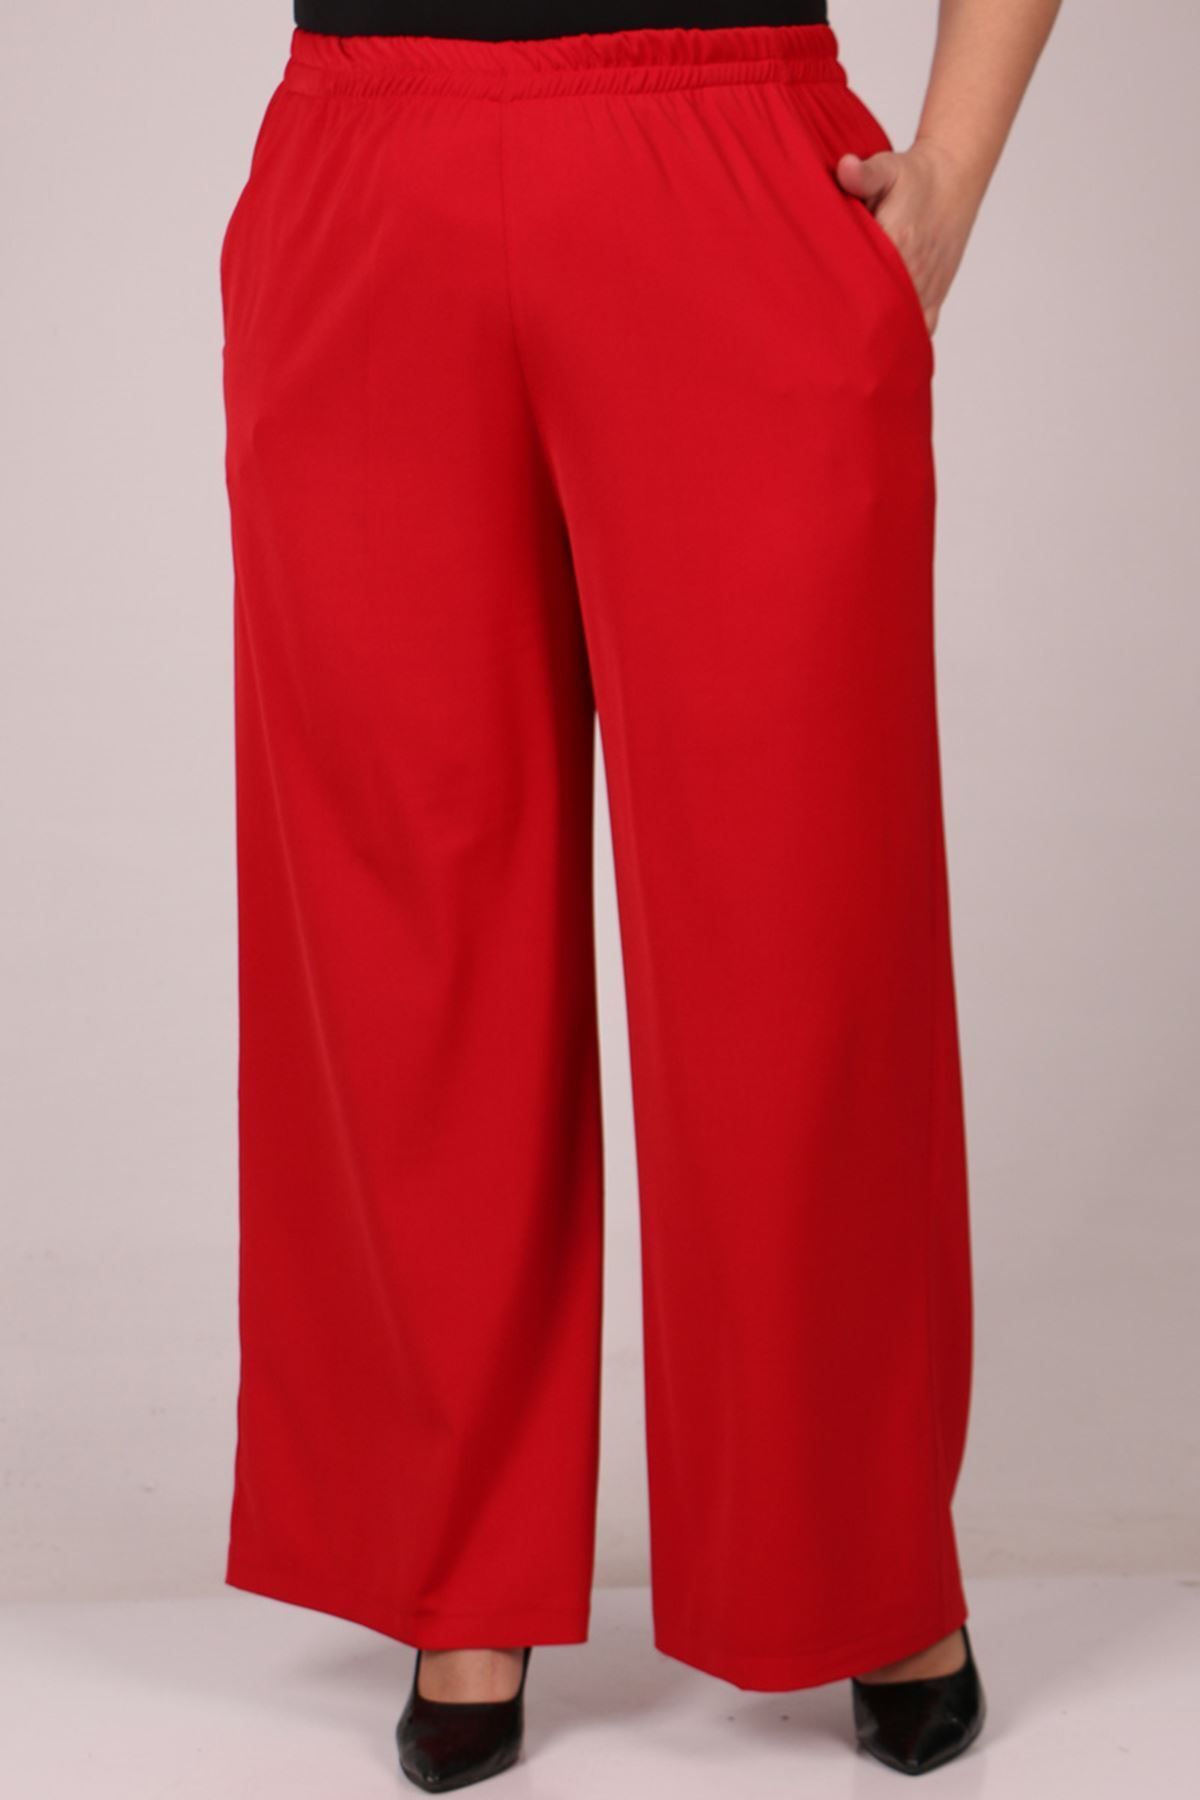 Eslina 29019 Büyük Beden Beli Lastikli En Boy Likra Pantolon - Kırmızı